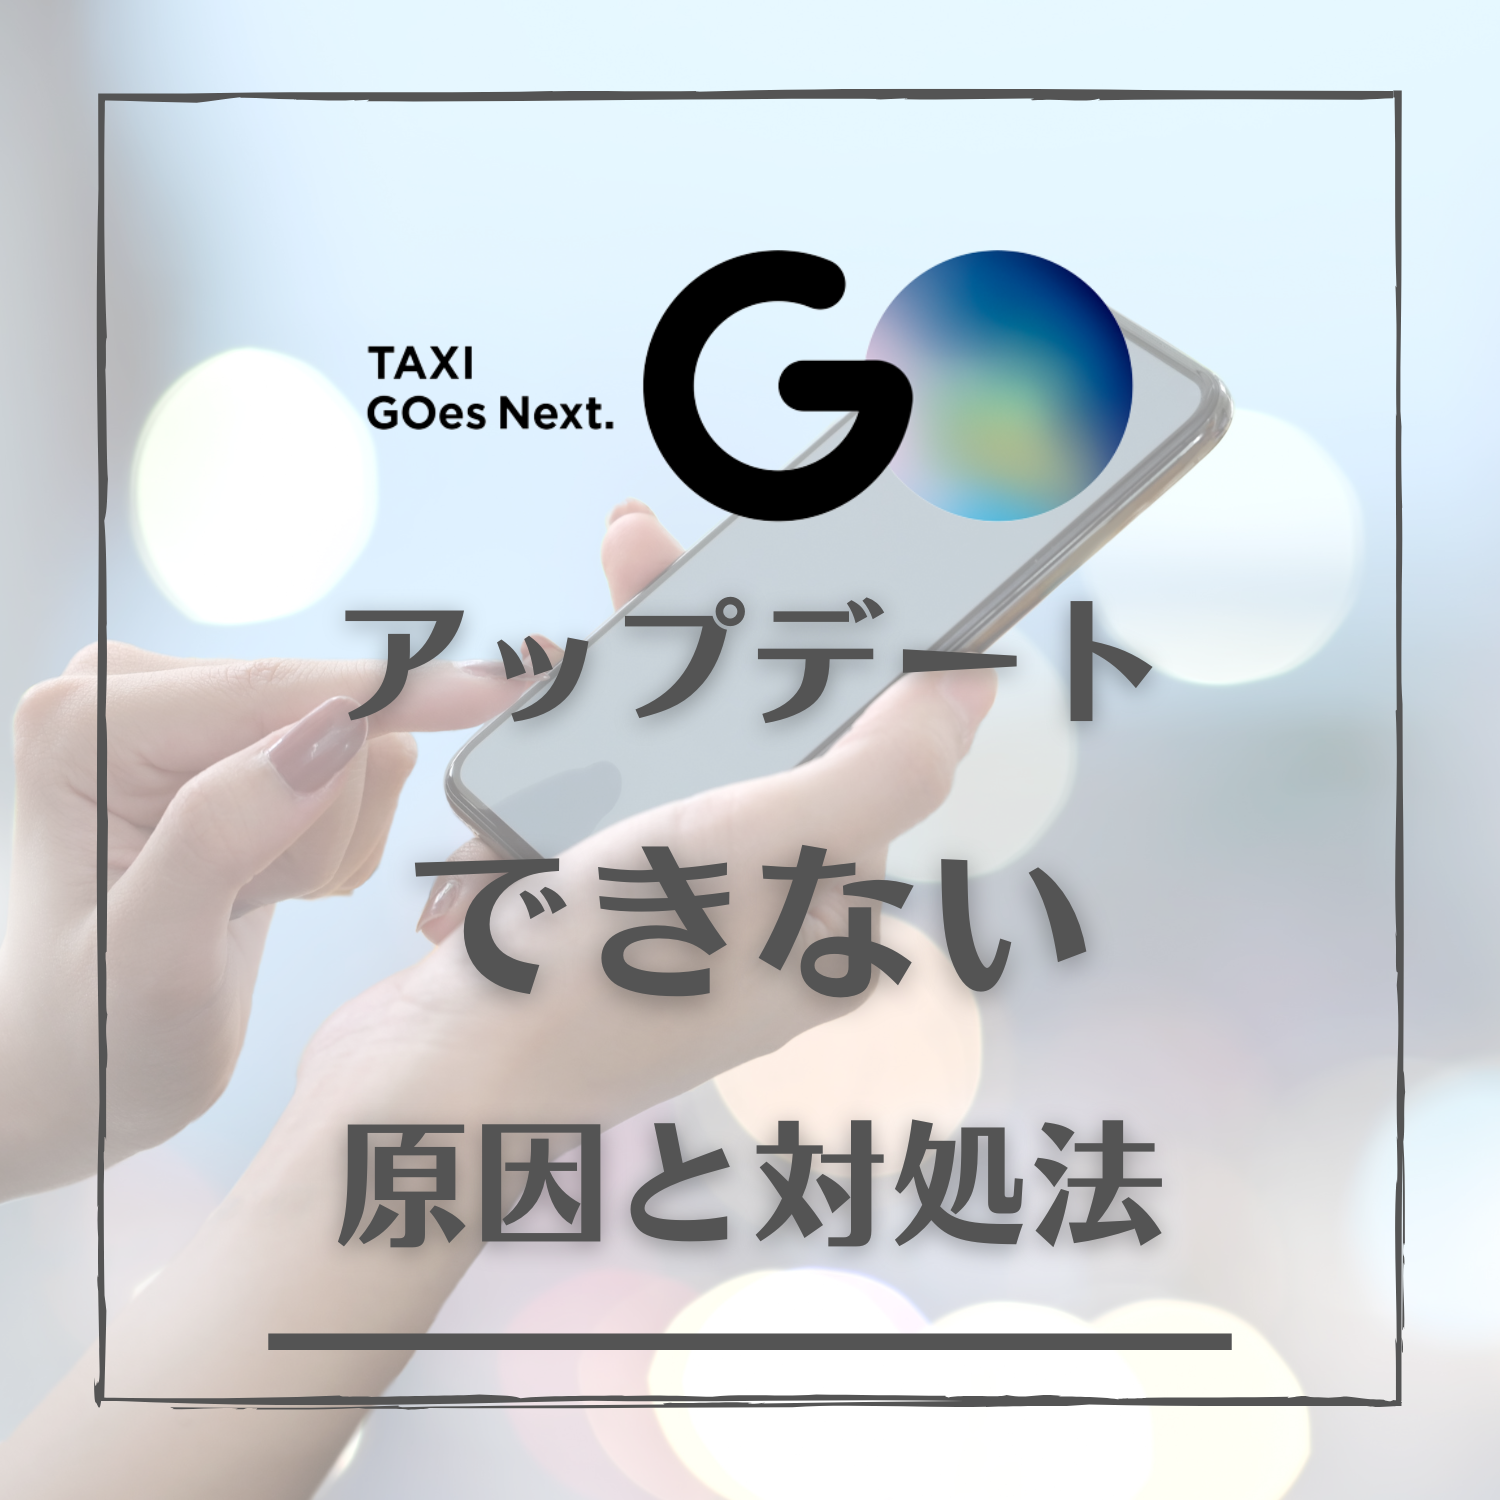 GO タクシーが呼べるアプリ 旧MOV×JapanTaxi(ゴー)がアップデートできない原因と対処法とは #ゴー